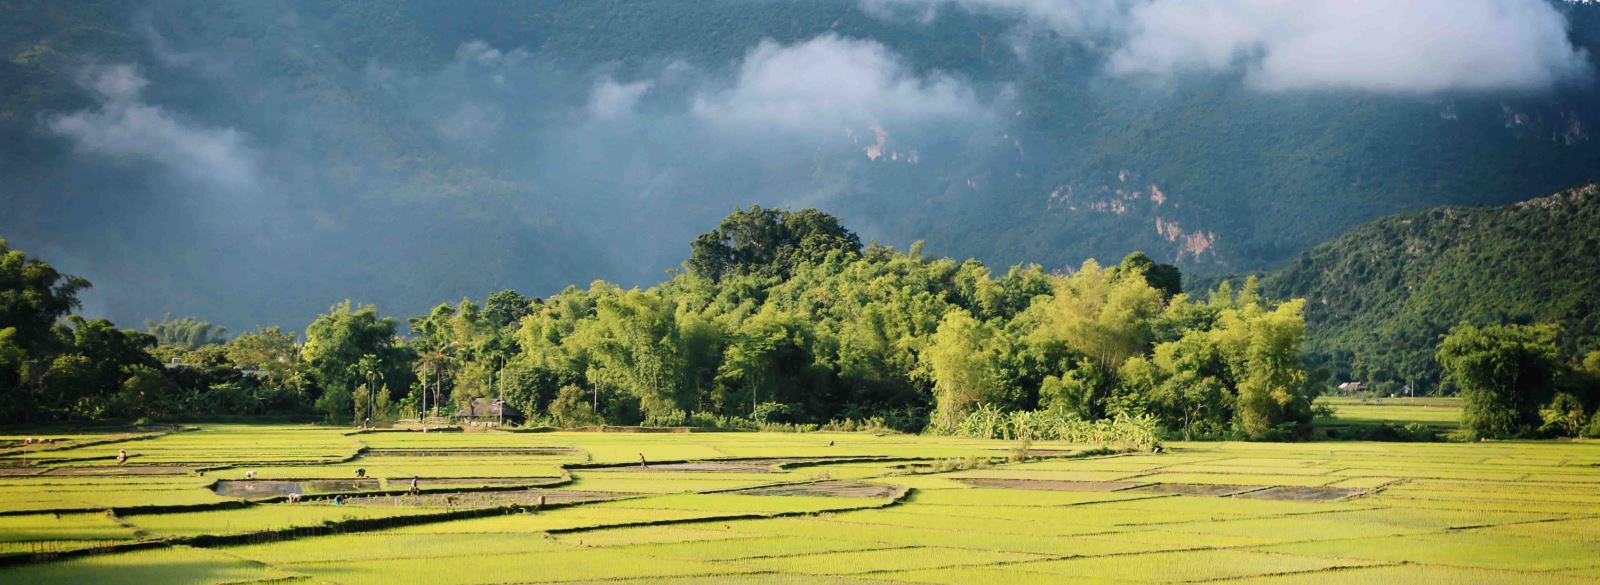 Mai Chau est une vallée charmante où dominent les Thaï depuis des siècles